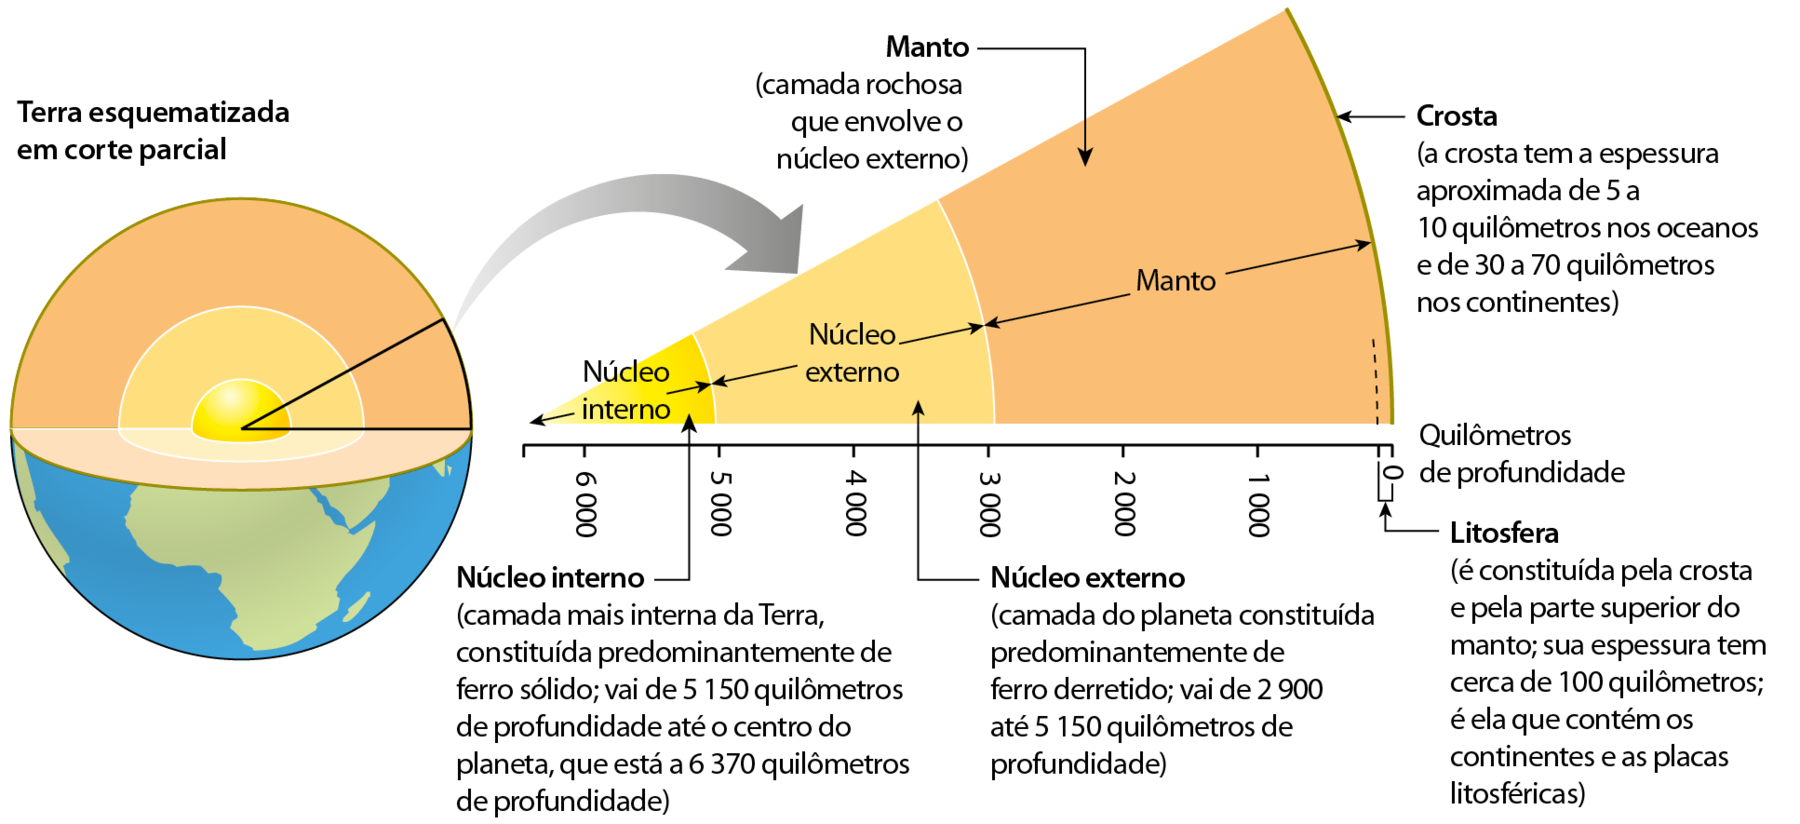 Esquema. Desenho do planeta Terra esquematizado em corte parcial, indicando as camadas internas em três tons de amarelo. Seta para a direita mostra a ampliação dessas camadas. De dentro para fora. Núcleo interno (amarelo mais intenso), profundidade de 5000 a 6000: (camada mais interna da Terra, constituída predominantemente de ferro sólido; vai de 5150 quilômetros de profundidade até o centro do planeta, que está a 6370 quilômetros de profundidade). Núcleo externo (amarelo claro), profundidade de 3000 a 5000: (camada do planeta constituída predominantemente de ferro derretido; vai de 2900 até 5150 quilômetros de profundidade). Manto (em amarelo alaranjado), profundidade de quase zero até 3000: (camada rochosa que envolve o núcleo externo). Litosfera: (é constituída pela crosta e pela parte superior do manto; sua espessura tem cerca de 100 quilômetros; é ela que contém os continentes e as placas litosféricas). Crosta ( em marrom): (a crosta tem a espessura aproximada de 5 a 10 quilômetros nos oceanos e de 30 a 70 quilômetros nos continentes).